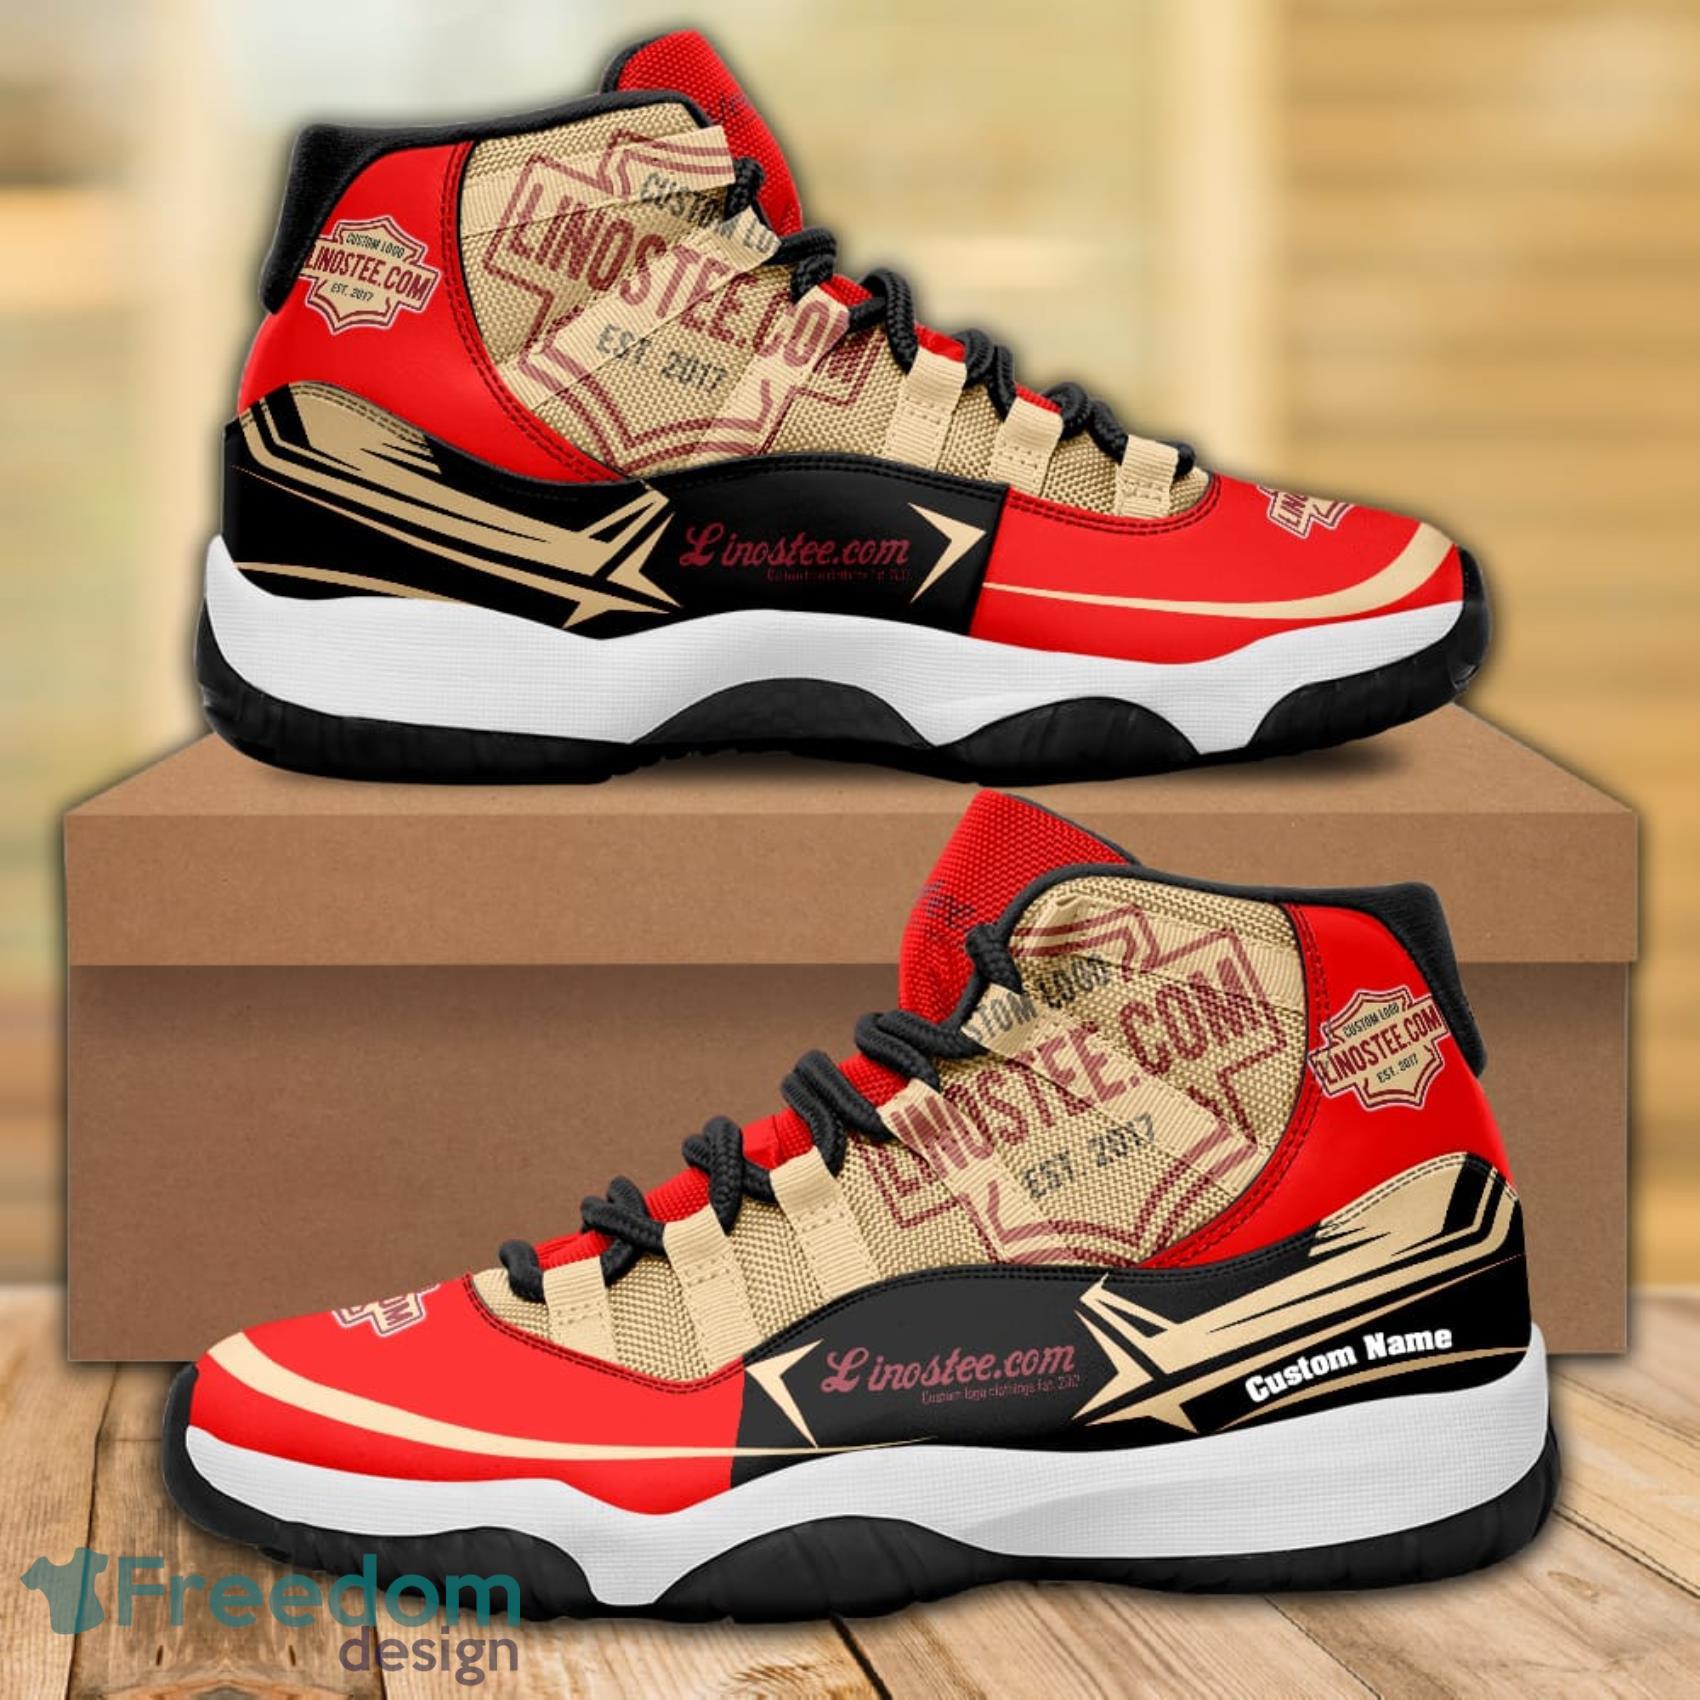 Kobe Bryant Lakers 07 Gift NBA Team Sneakers Custom Name Air Jordan 13  Shoes For Fans